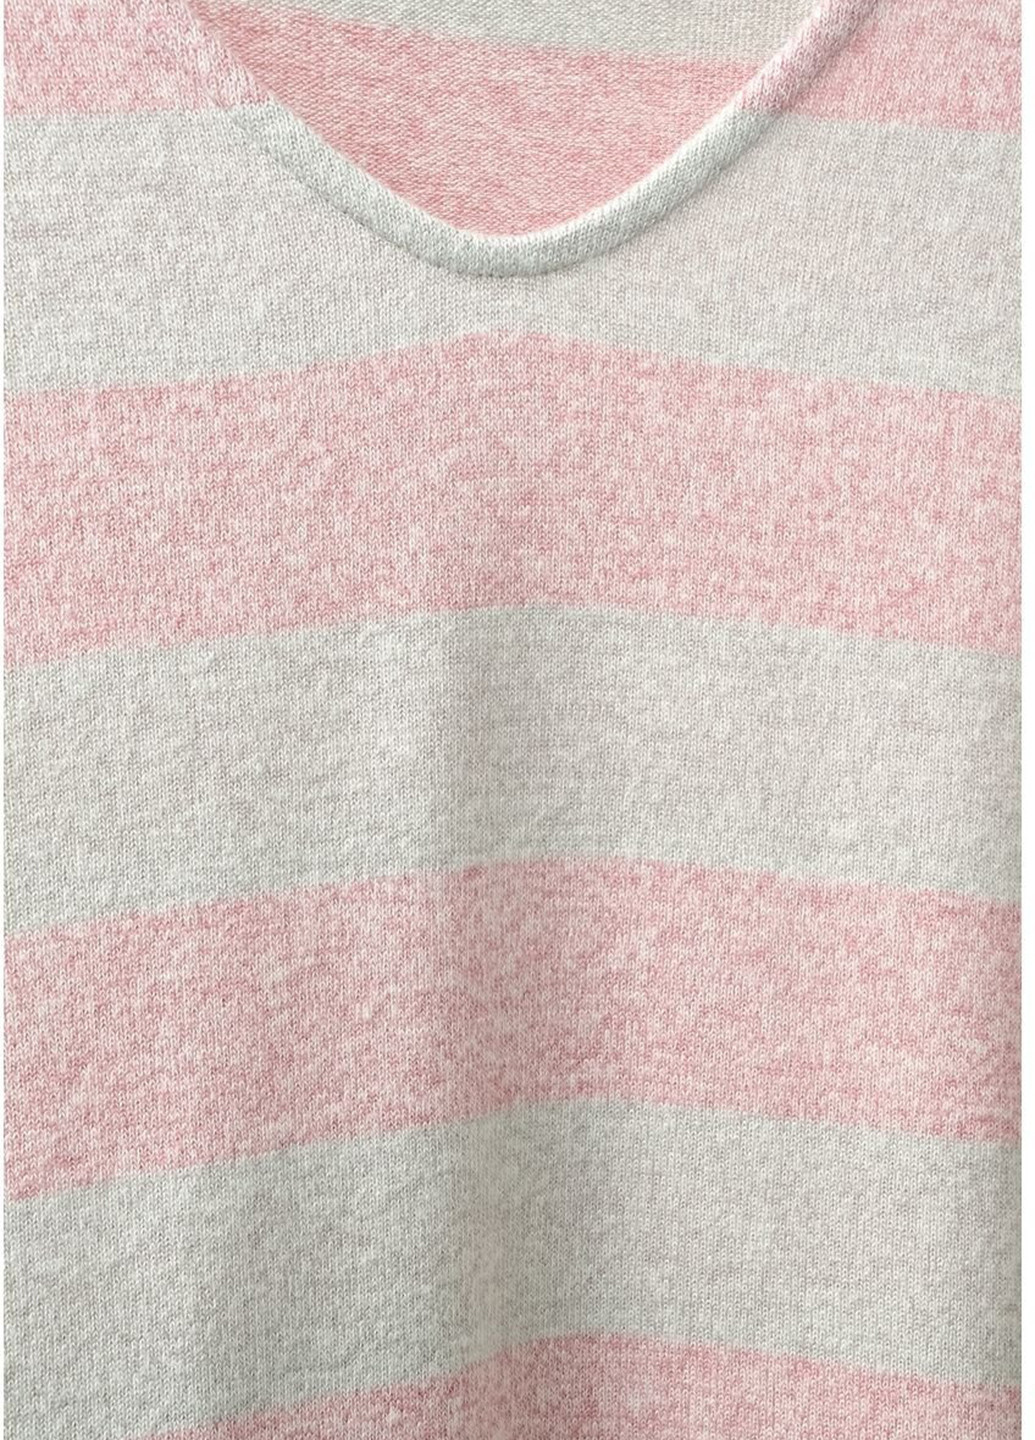 Светло-розовый демисезонный пуловер пуловер Street One